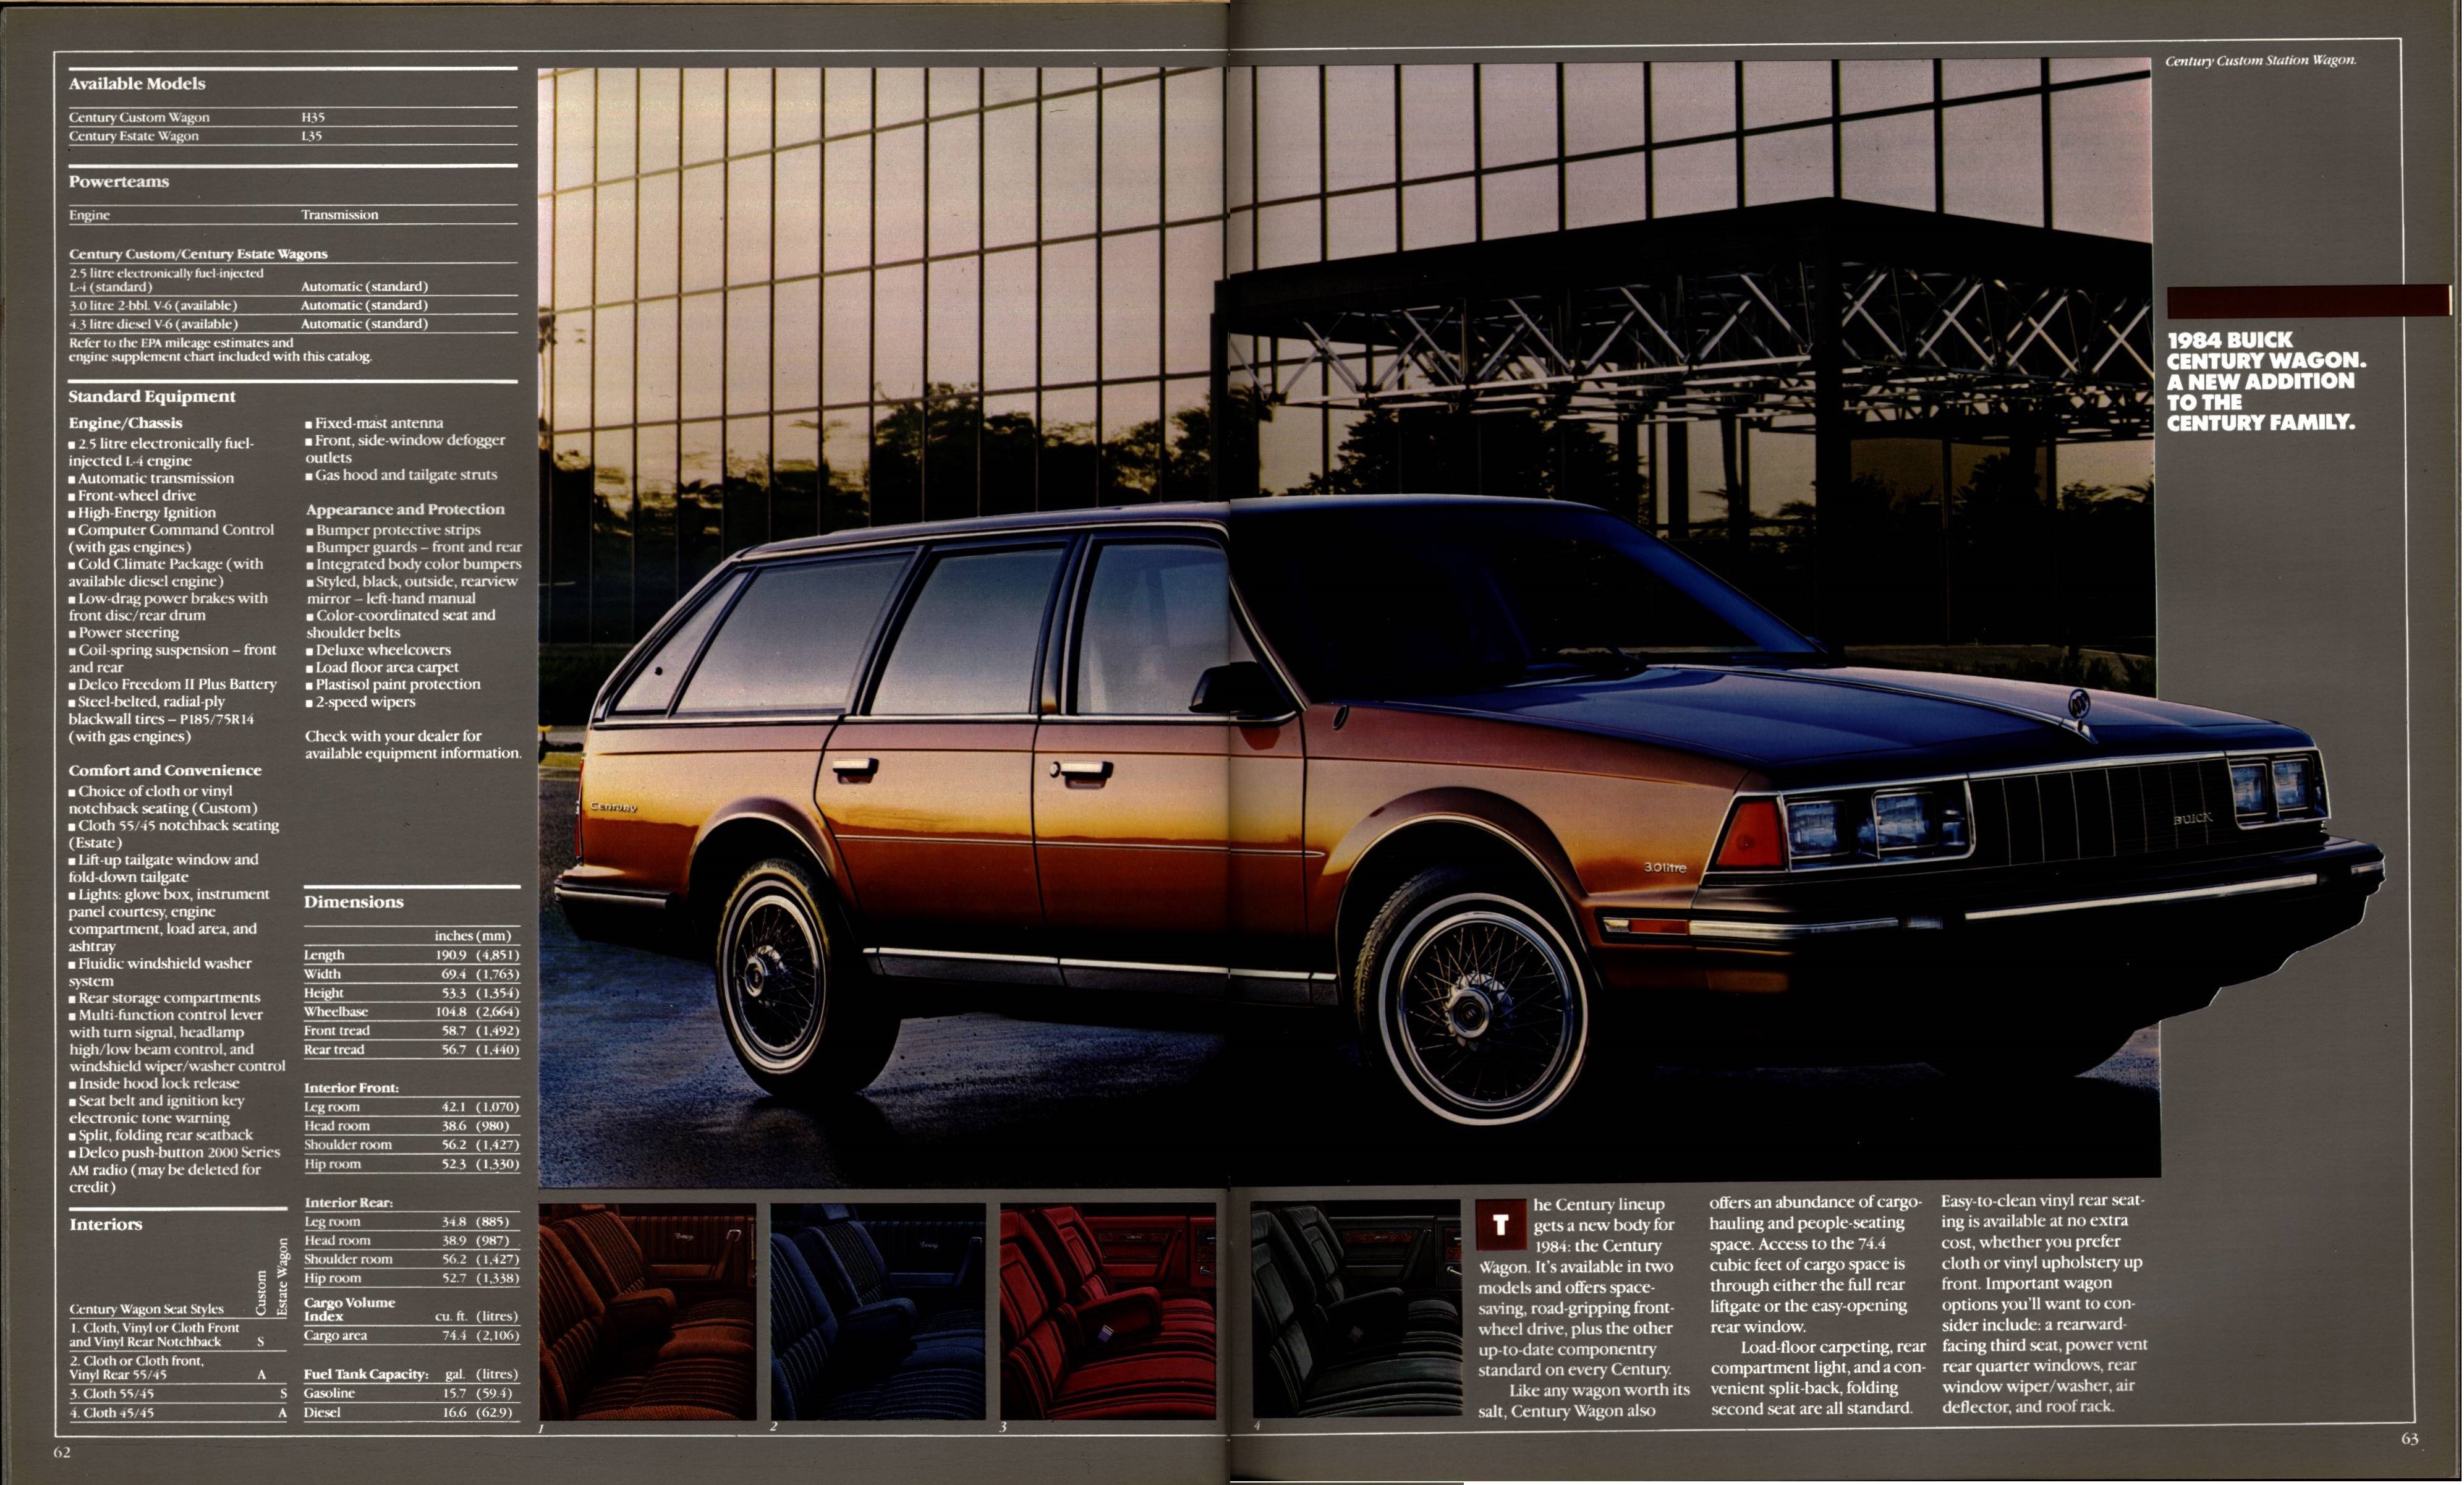 1984 Buick Full Line Prestige 62-63